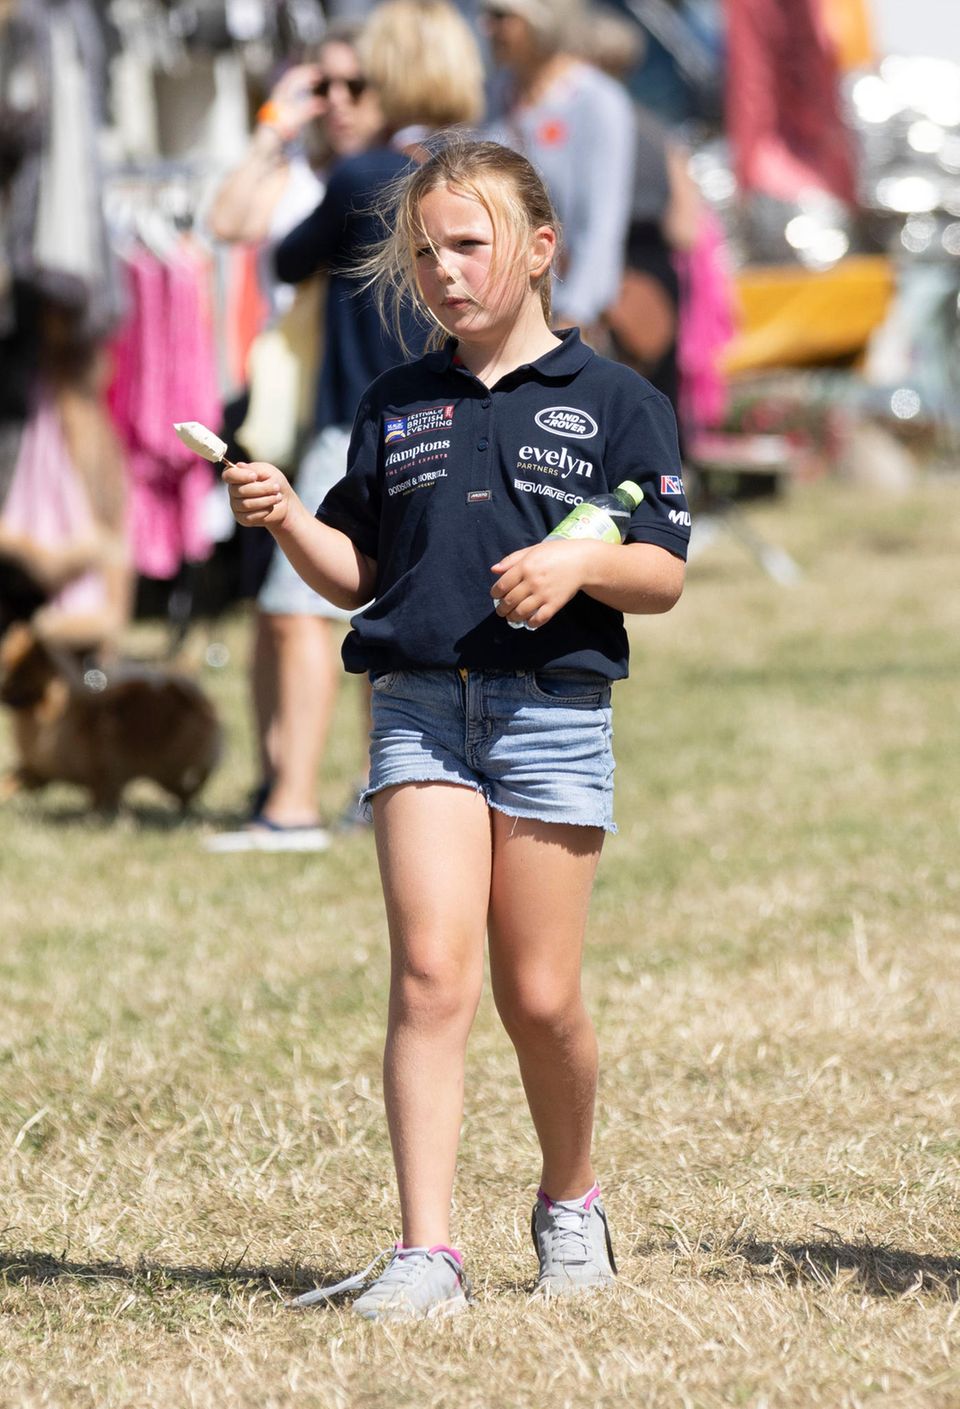 Mia besucht das Pferde-Festival ebenfalls in Shirt und Jeansshorts